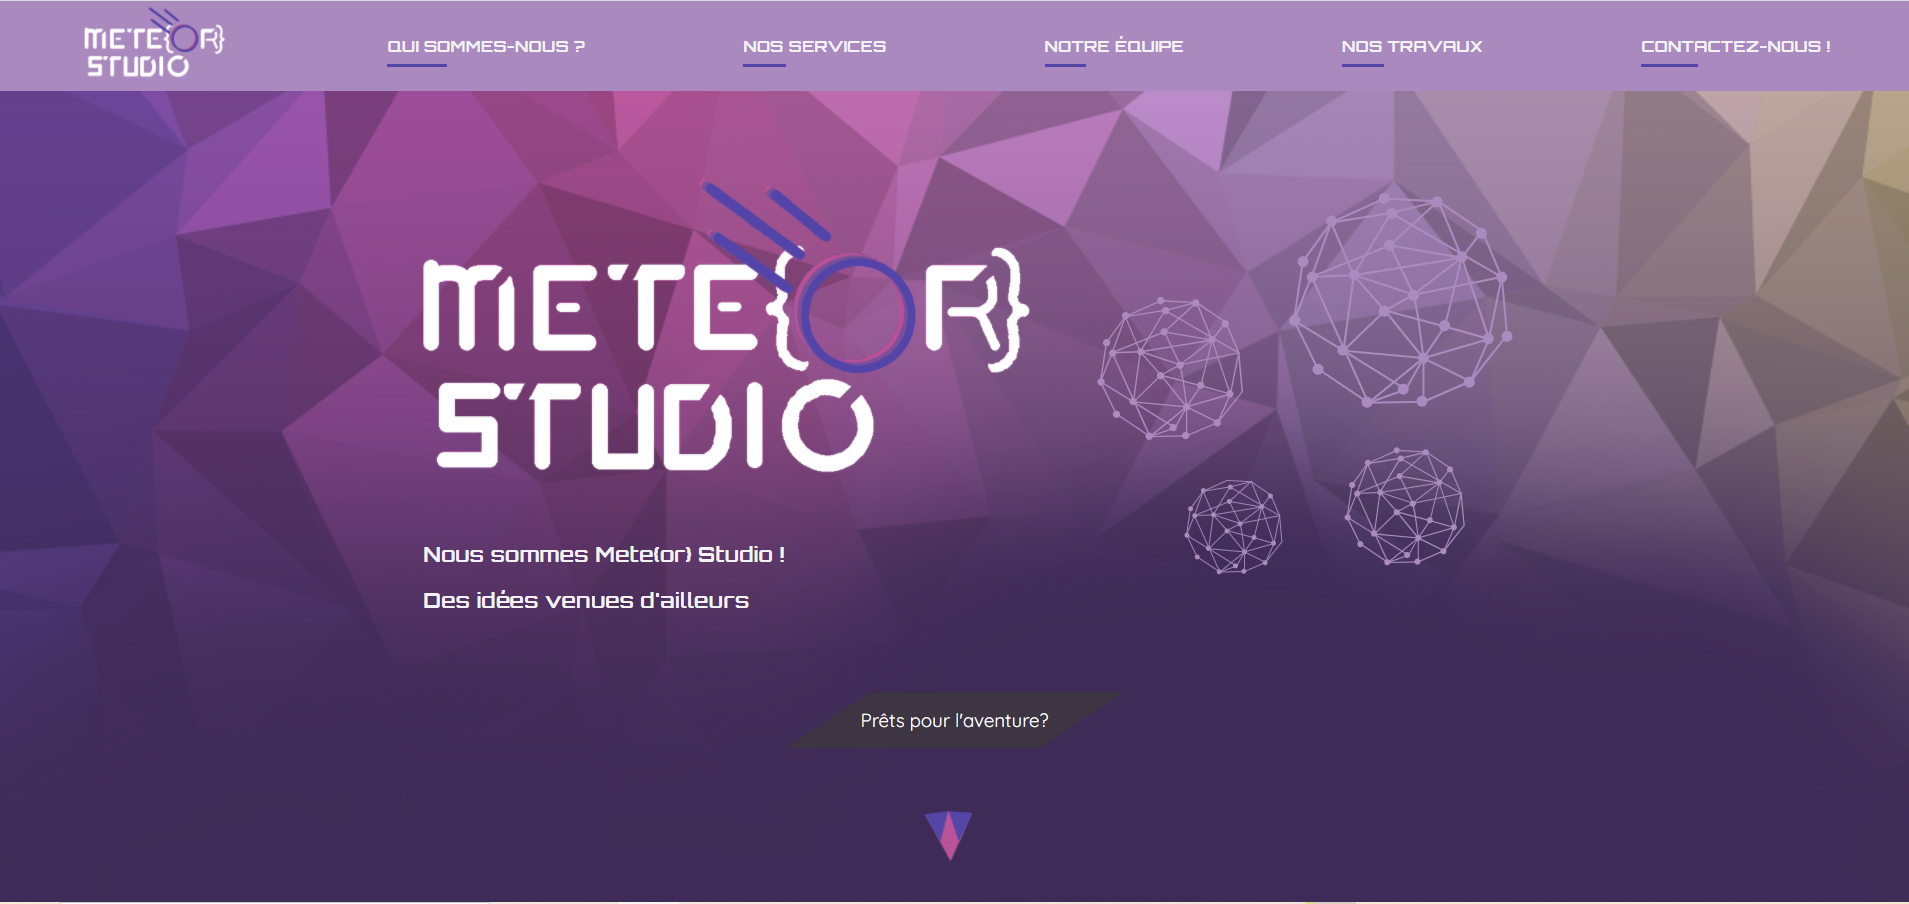 Page d'accueil du site Meteor